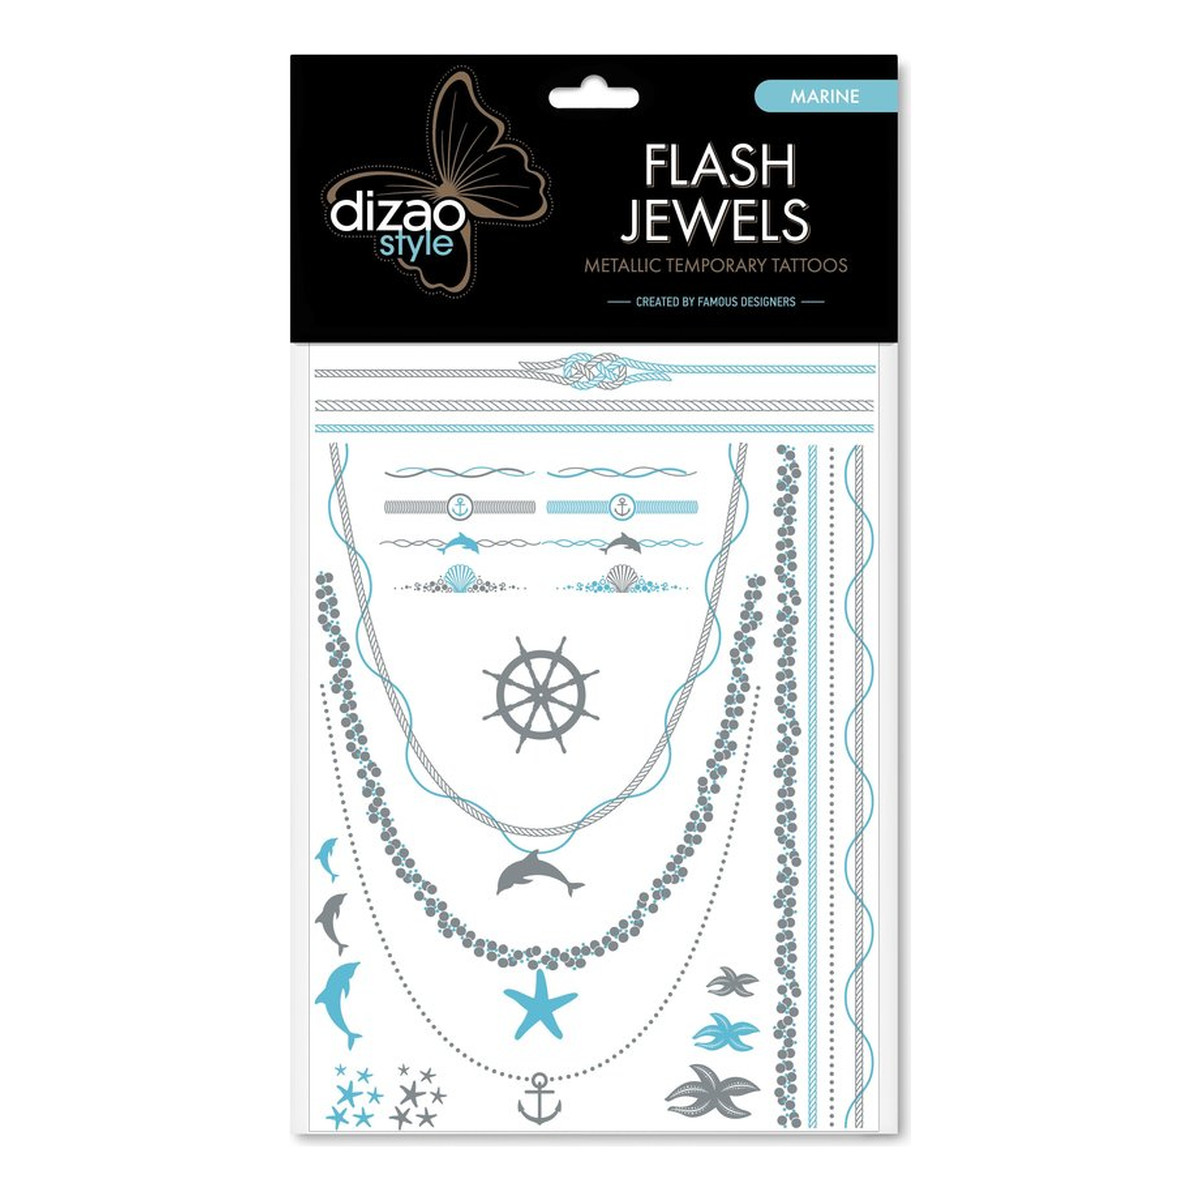 Dizao Flash Jewels Tatuaż krótkotrwały "Morze"